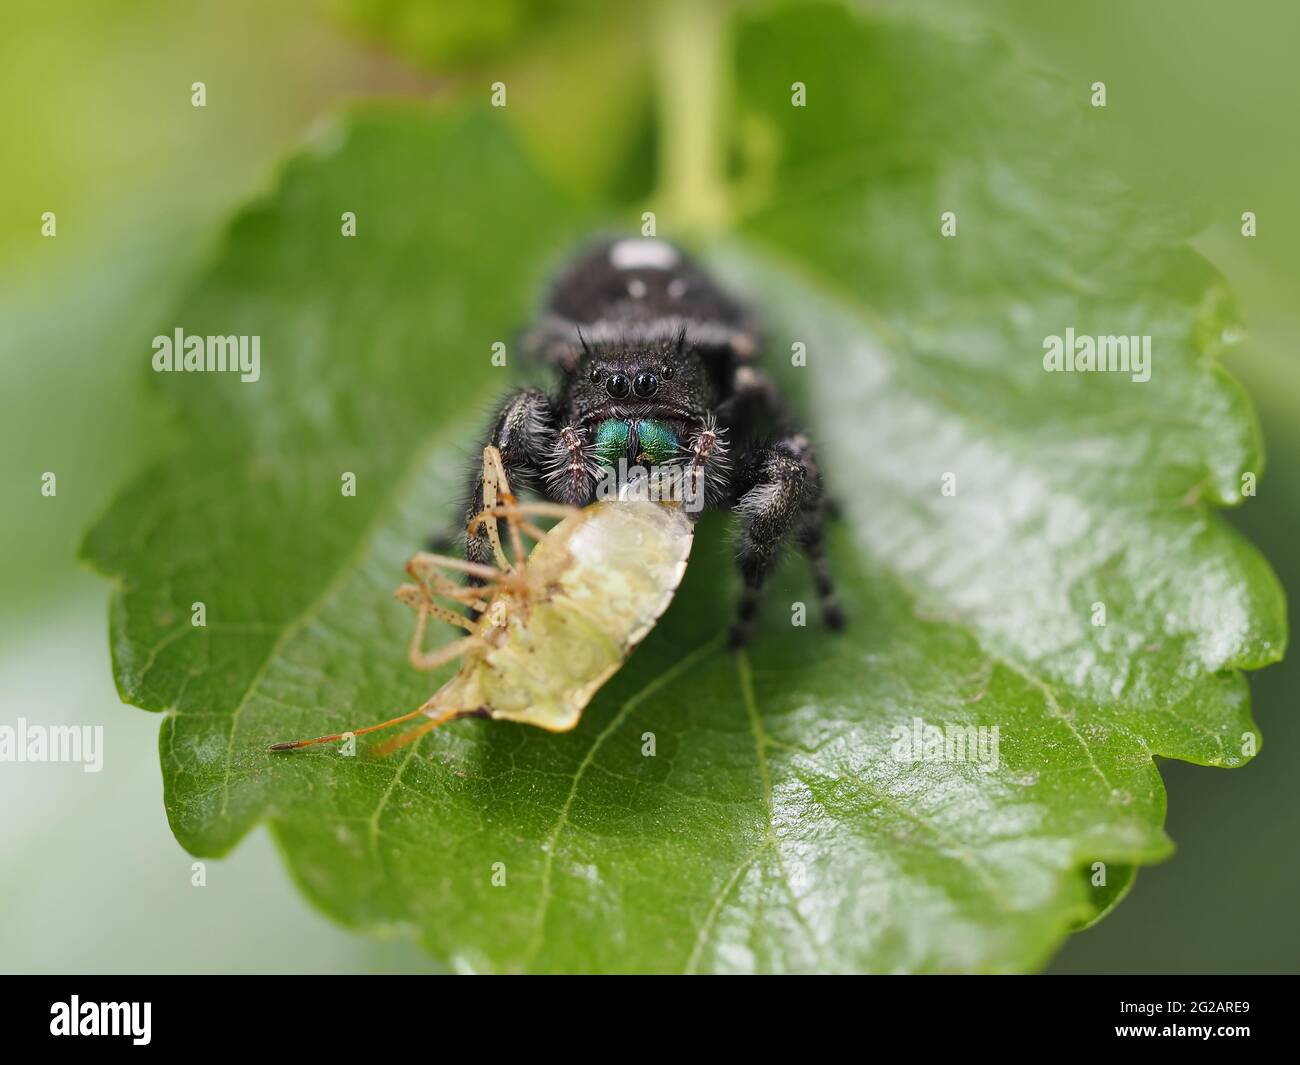 Phidippus audax (araña de salto audaz) con presa (chinche) - fotografía macro Foto de stock